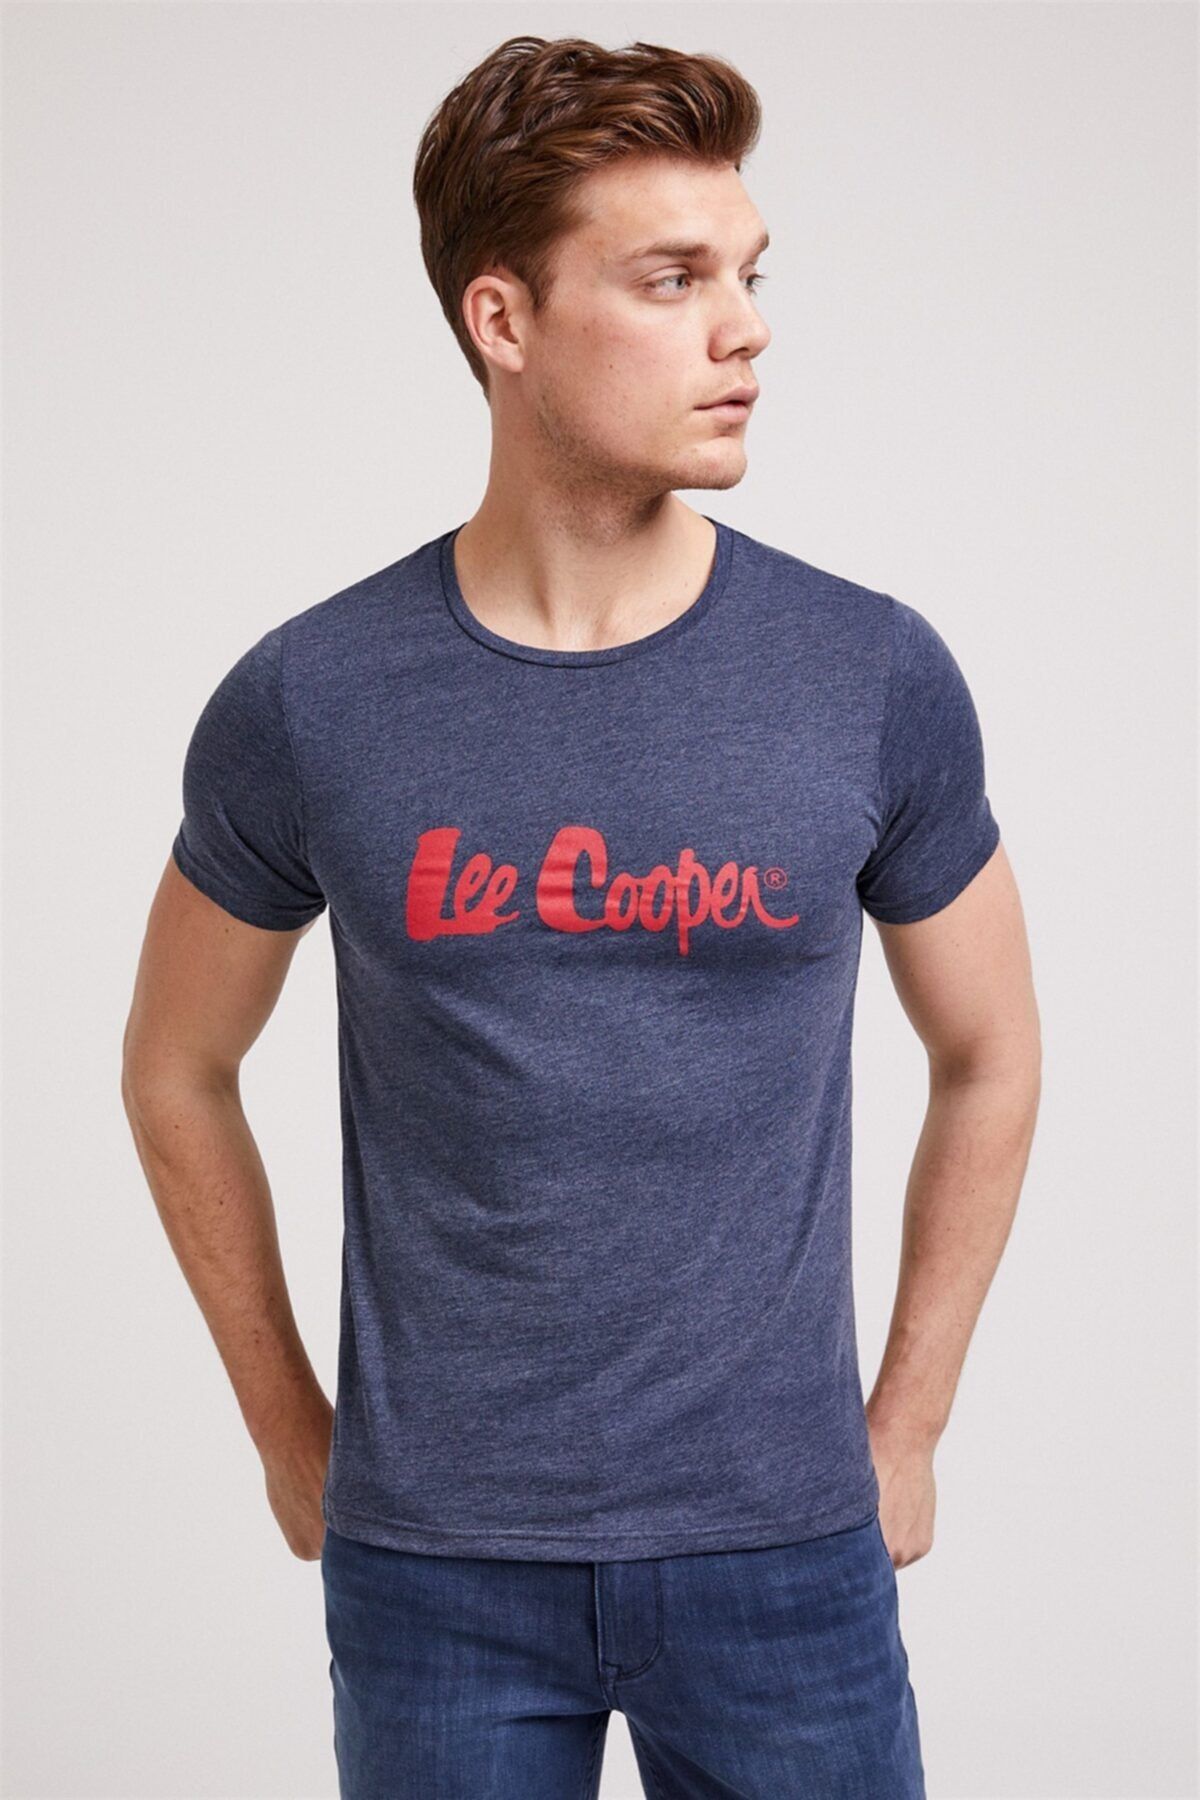 Lee Cooper Londonlogo 1 Erkek Bisiklet Yaka T-shirt Indigo-k